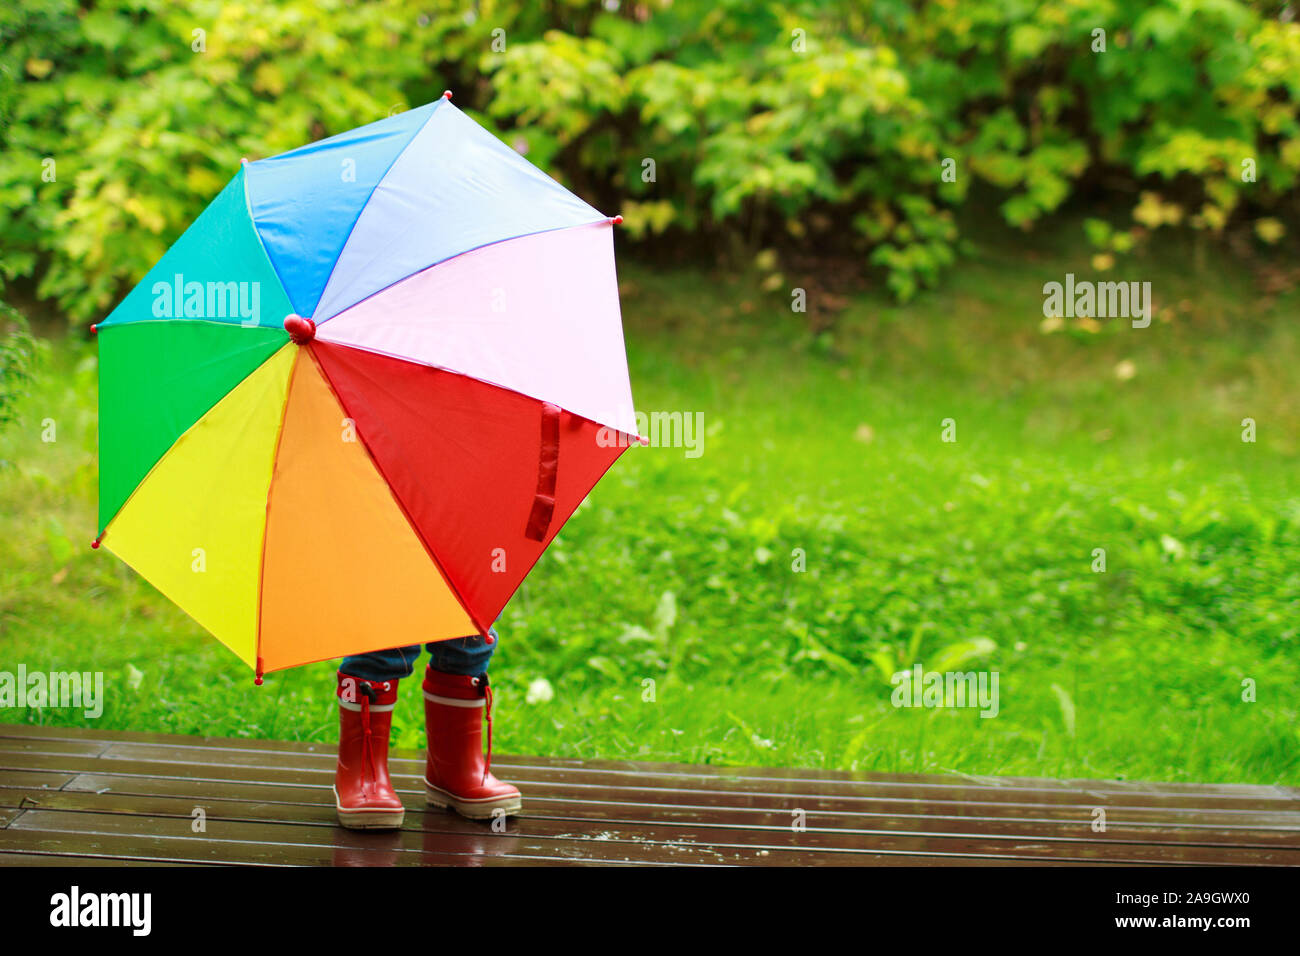 Finnland, kleines Maedchen mit Regenschirm im Regen Foto Stock